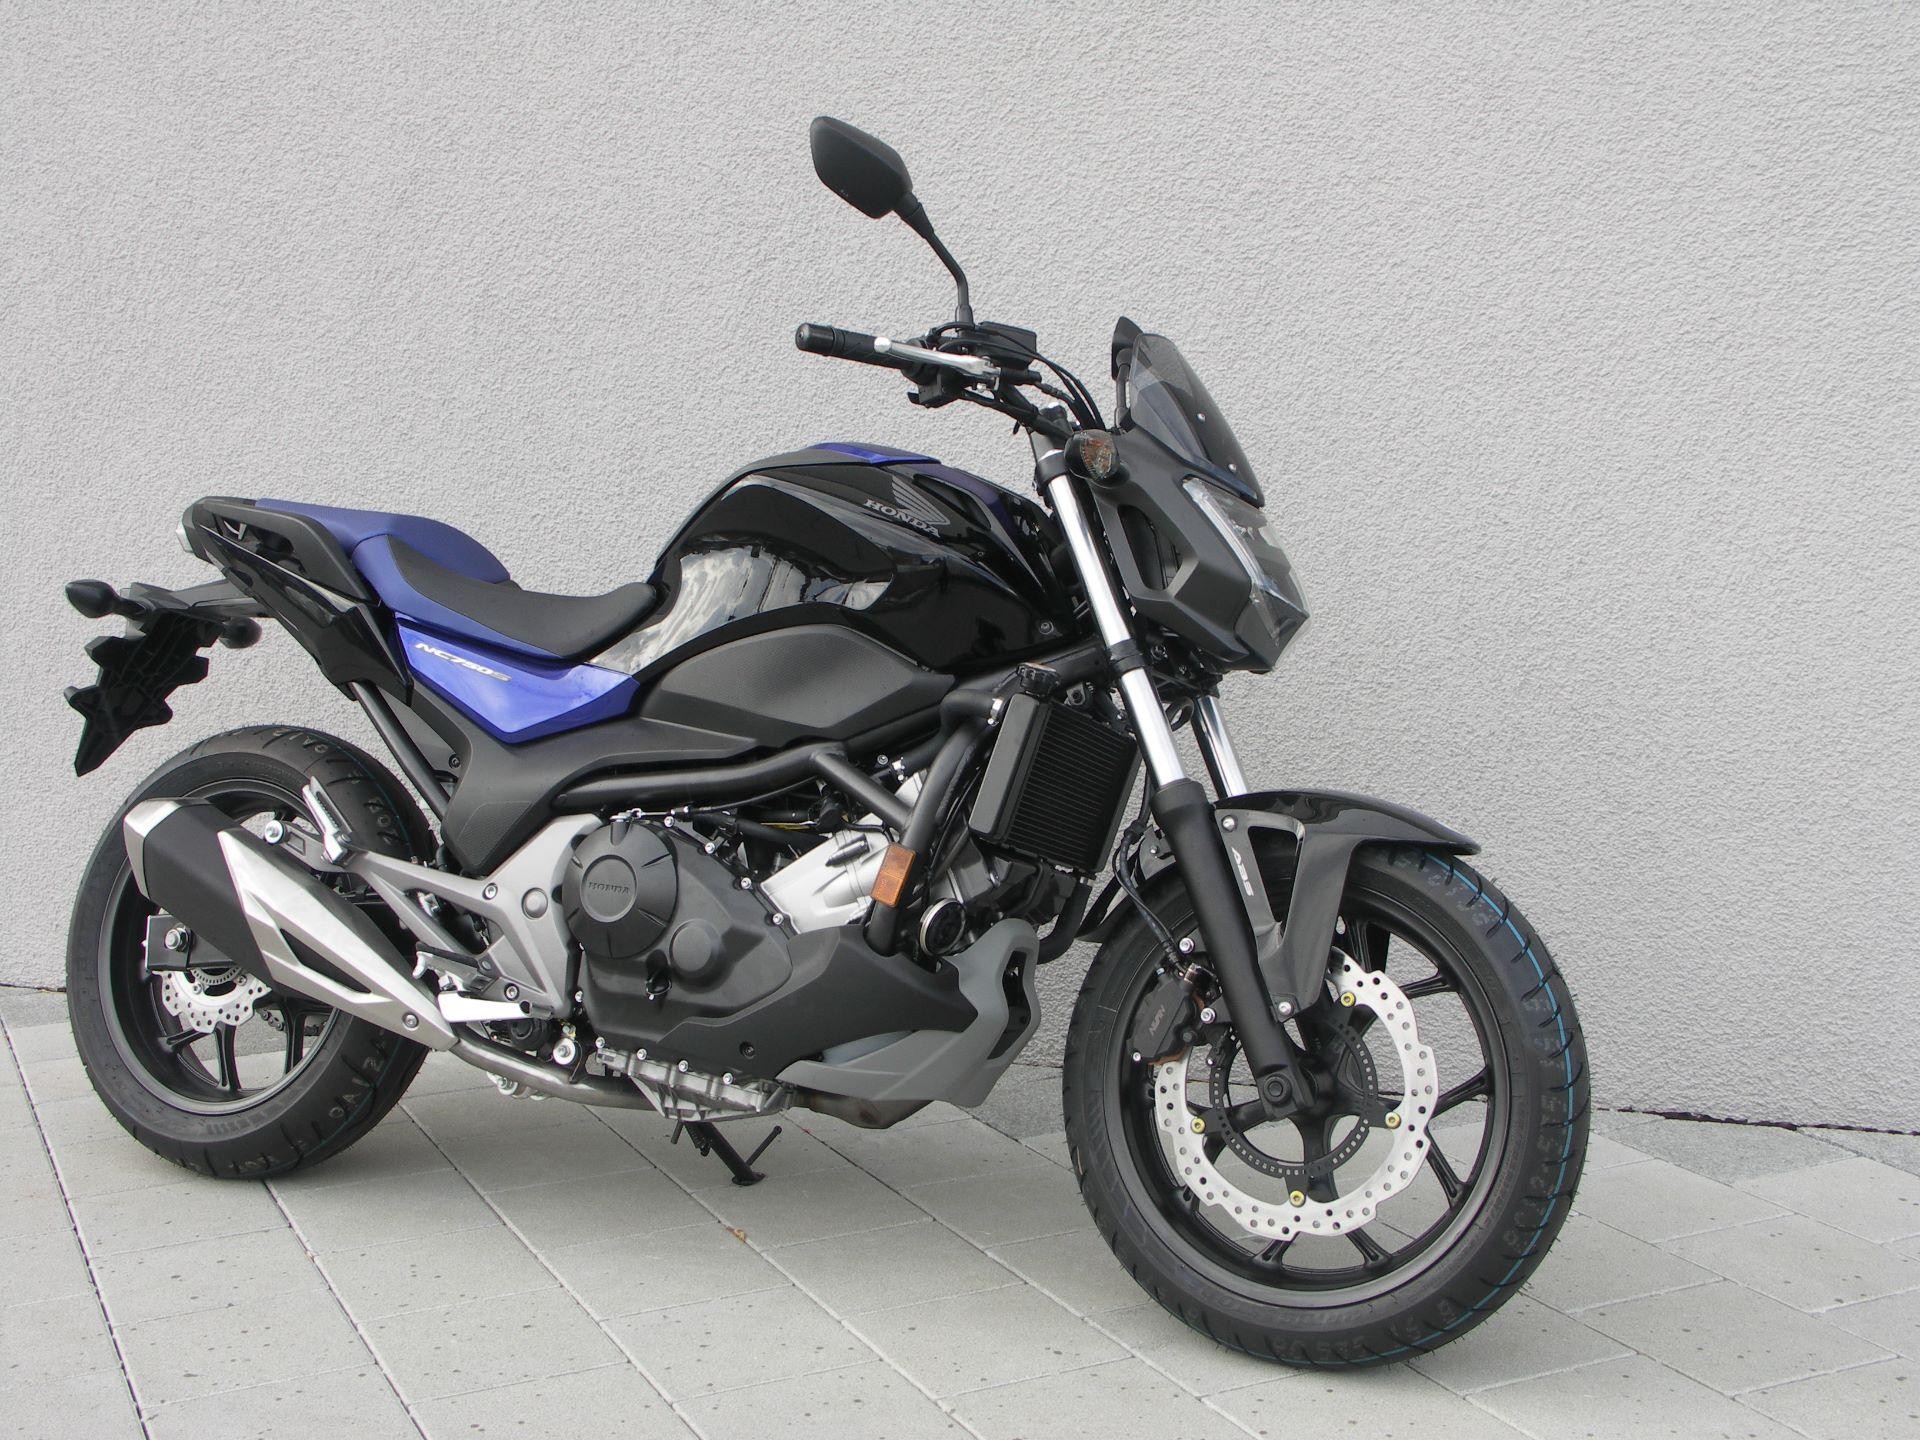 Buy Motorbike New Vehicle Bike Honda Nc 750 Sa M Urech Motocenter Ag Windisch Id